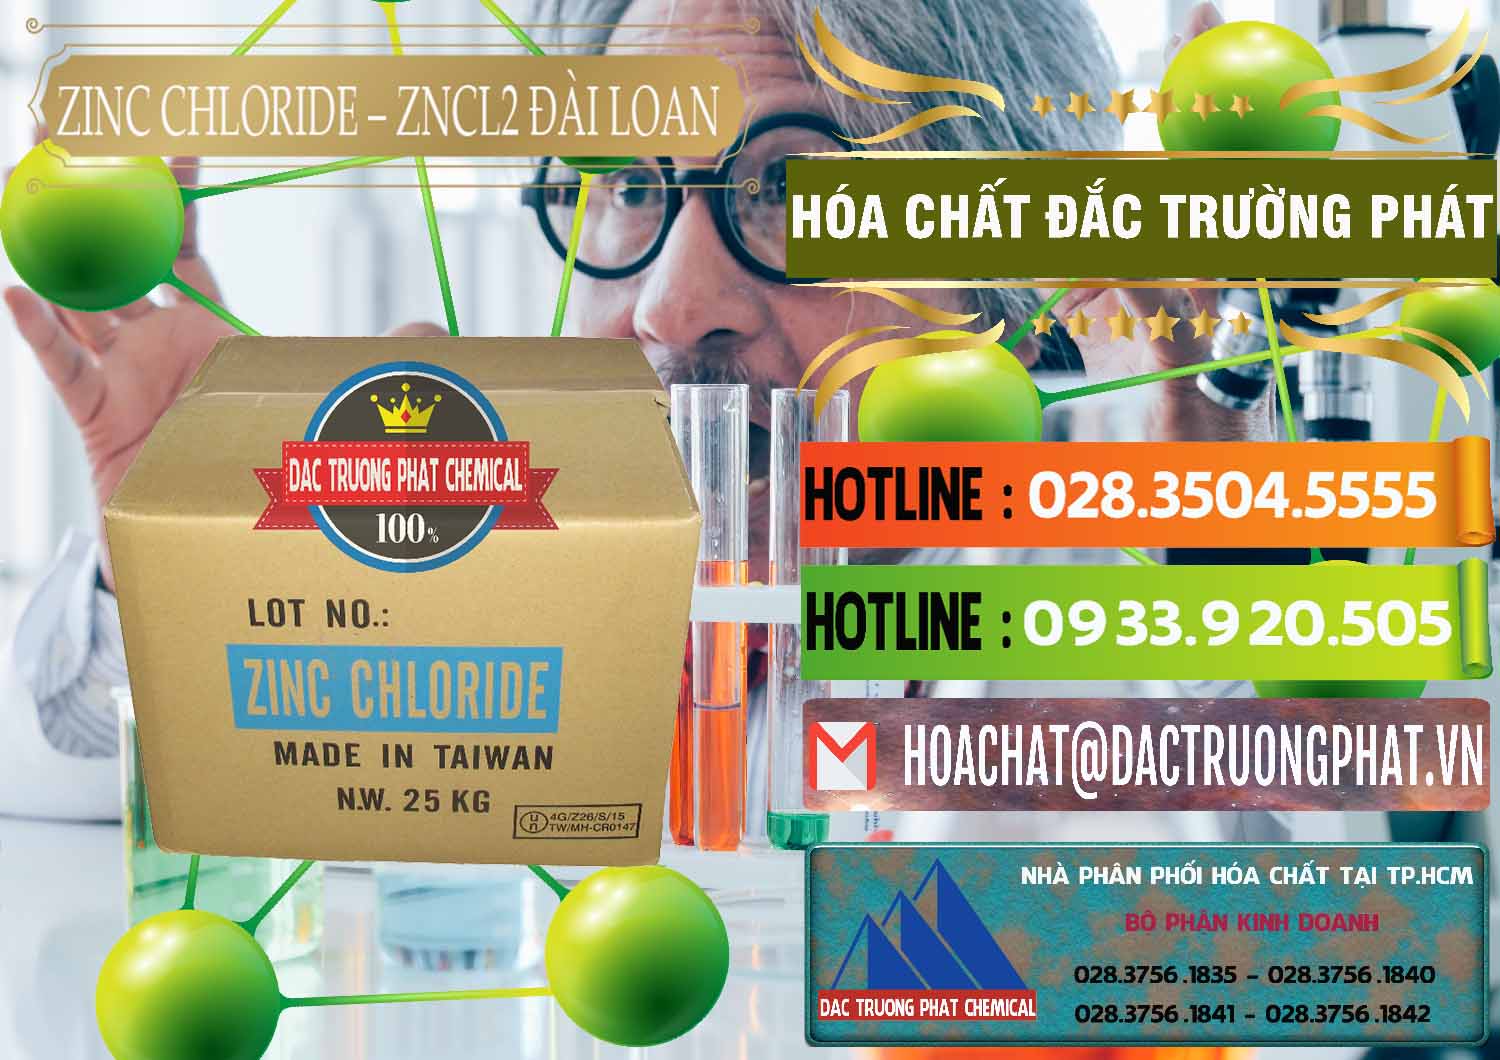 Nơi chuyên bán - cung cấp Zinc Chloride - ZNCL2 96% Đài Loan Taiwan - 0178 - Đơn vị phân phối - cung cấp hóa chất tại TP.HCM - cungcaphoachat.com.vn